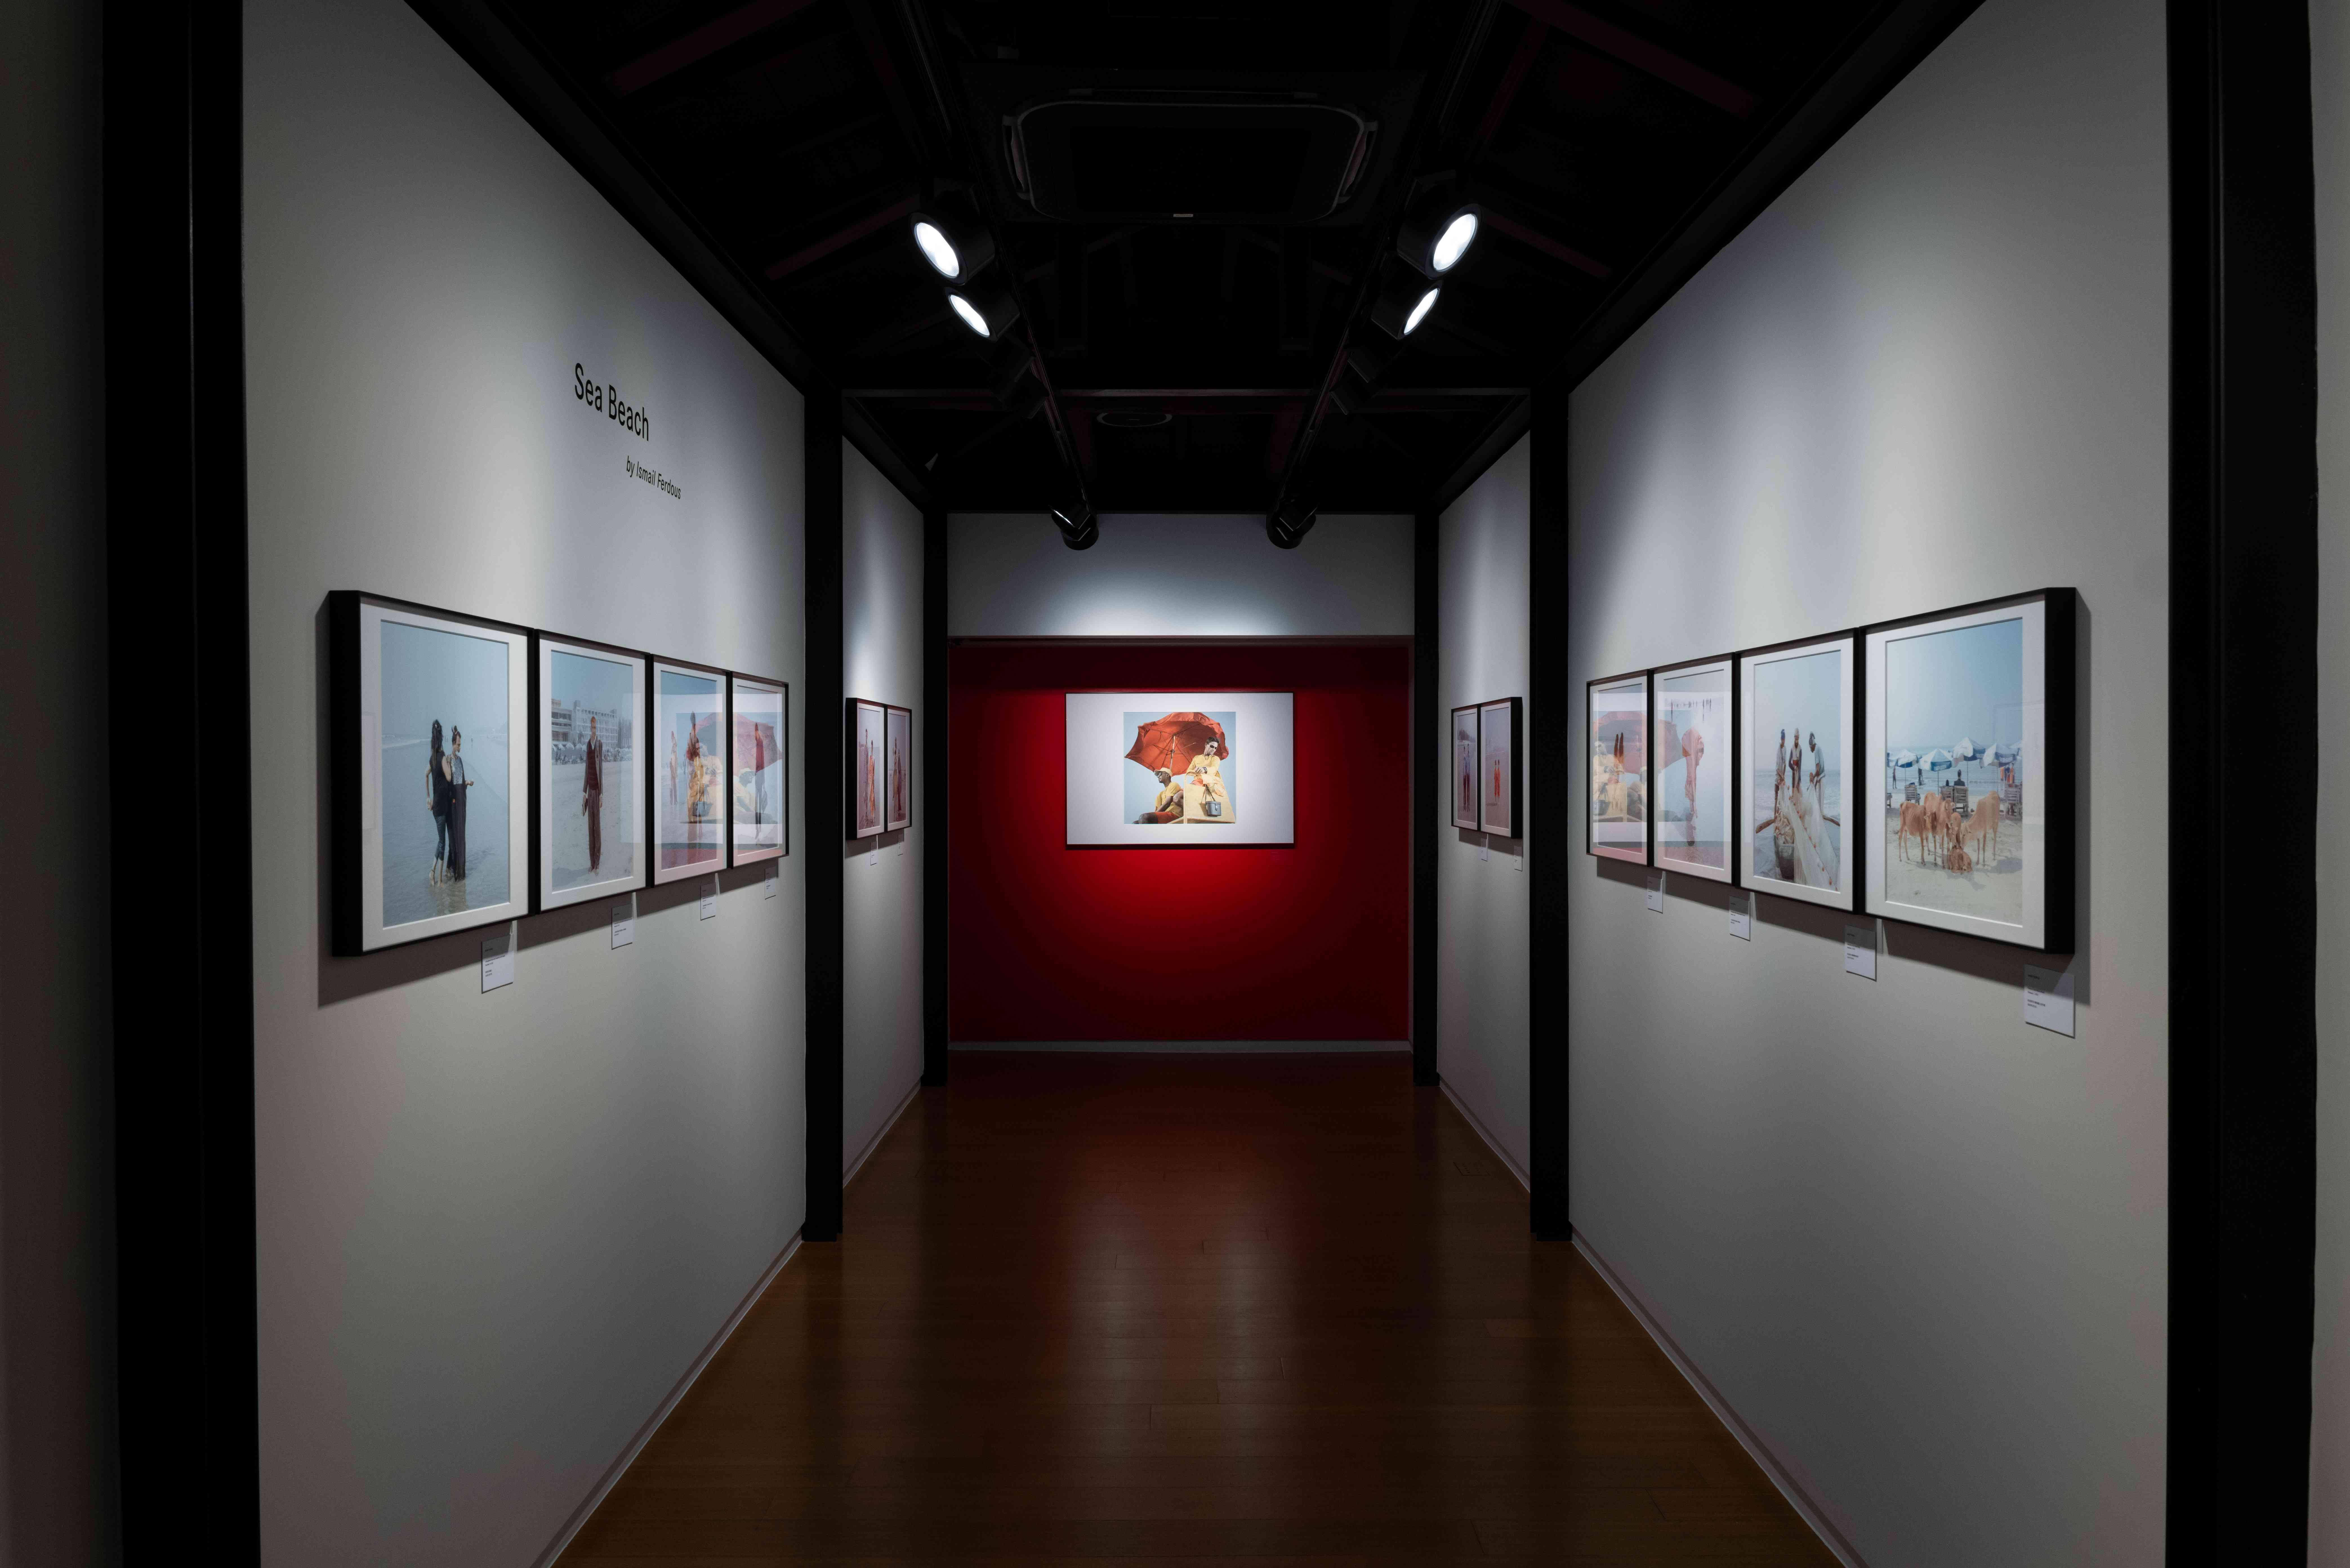 2023 徠卡奧斯卡巴納克攝影獎 (LOBA) 主獎作品移師台北藝廊展出 窺視當代影像獨樹一幟的藝術魅力